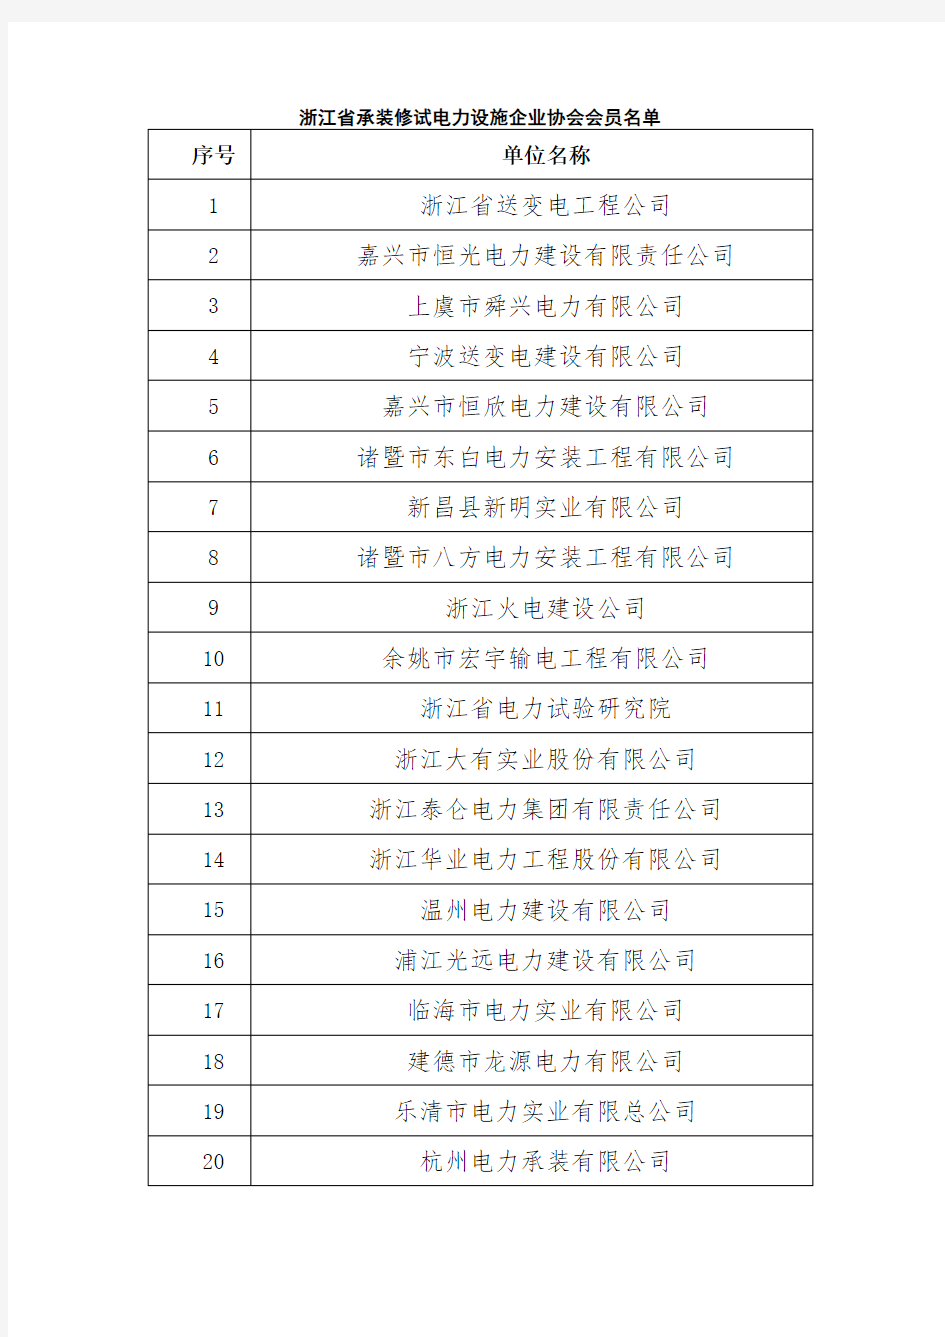 浙江省承装修试电力设施企业协会会员名单